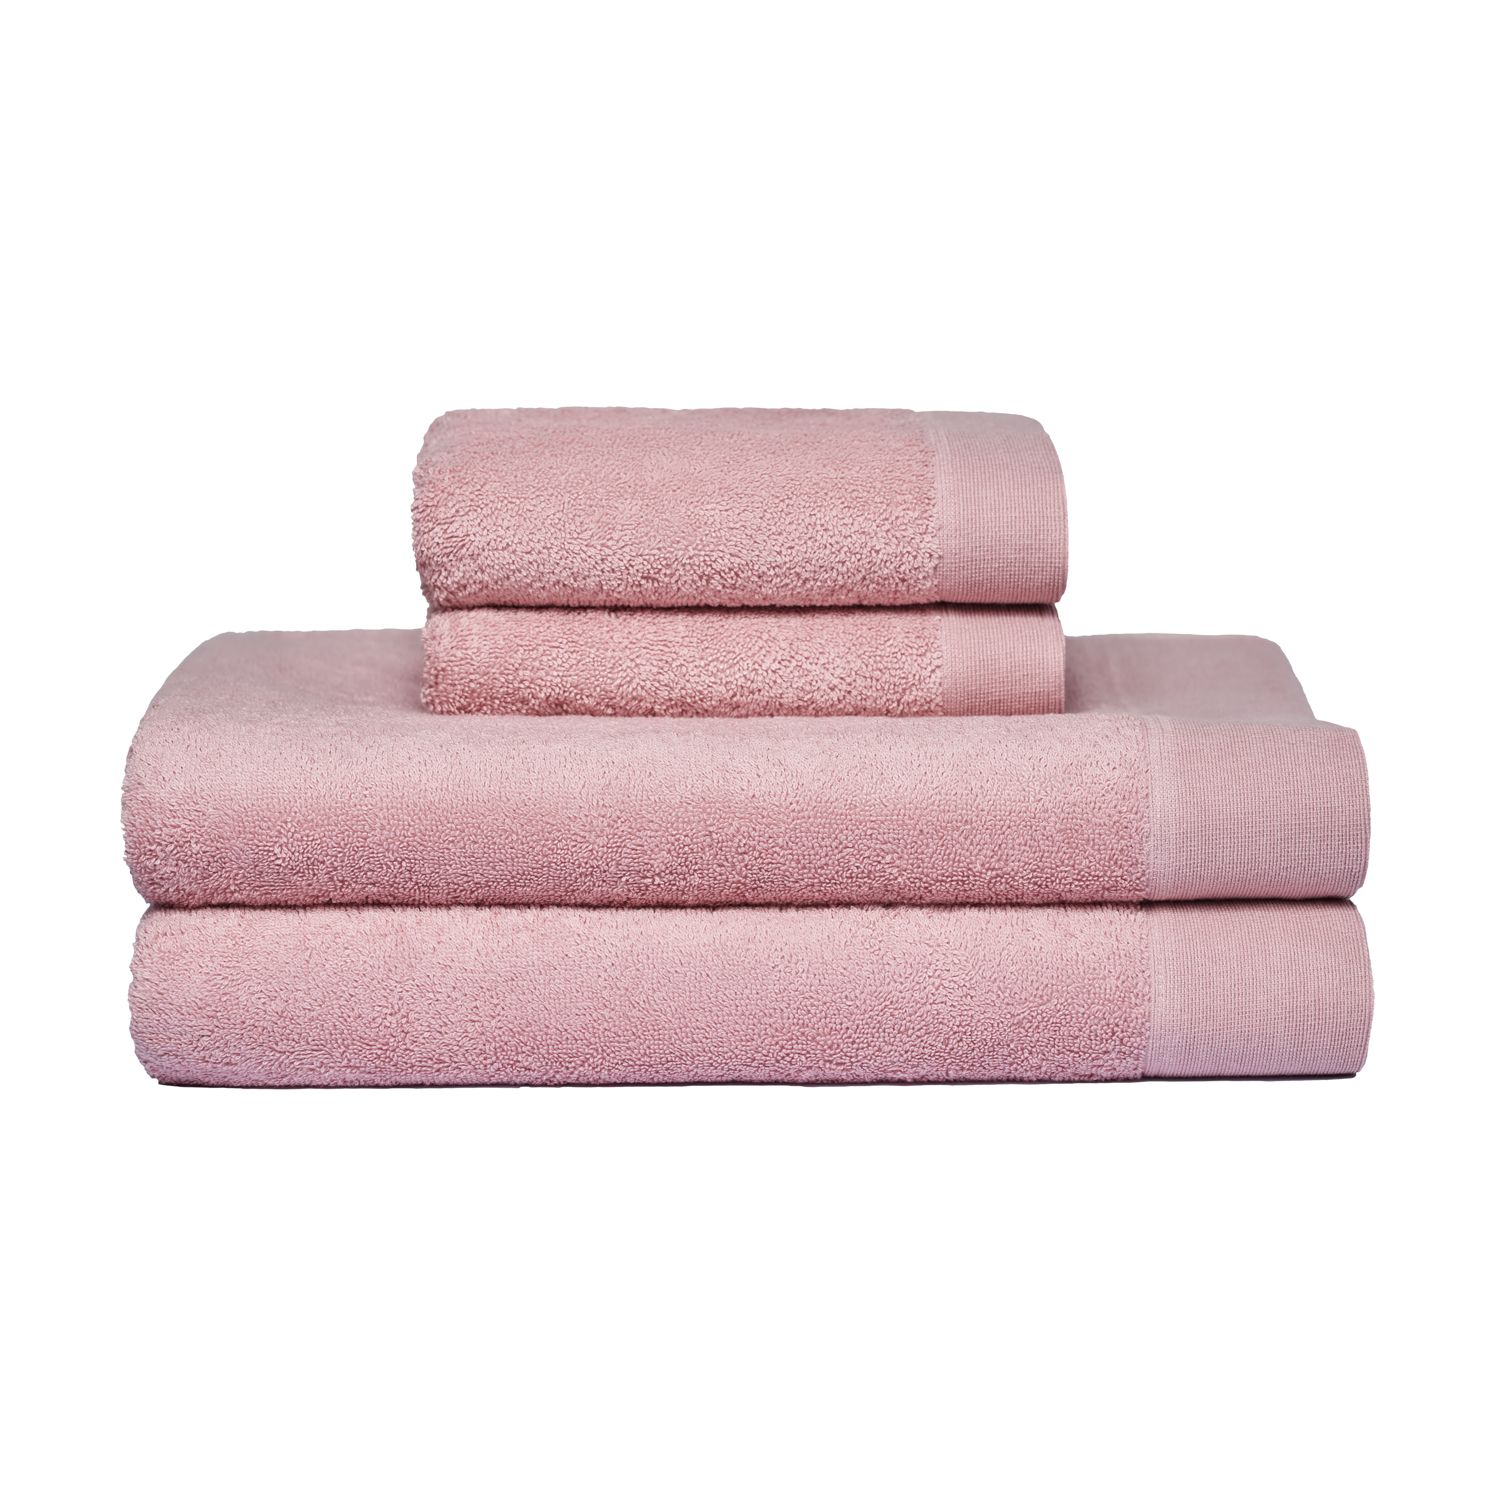 Set toalla mano, baño, 100% algodón, 500 gr. Incluye piso de baño - Tienda  Hohos